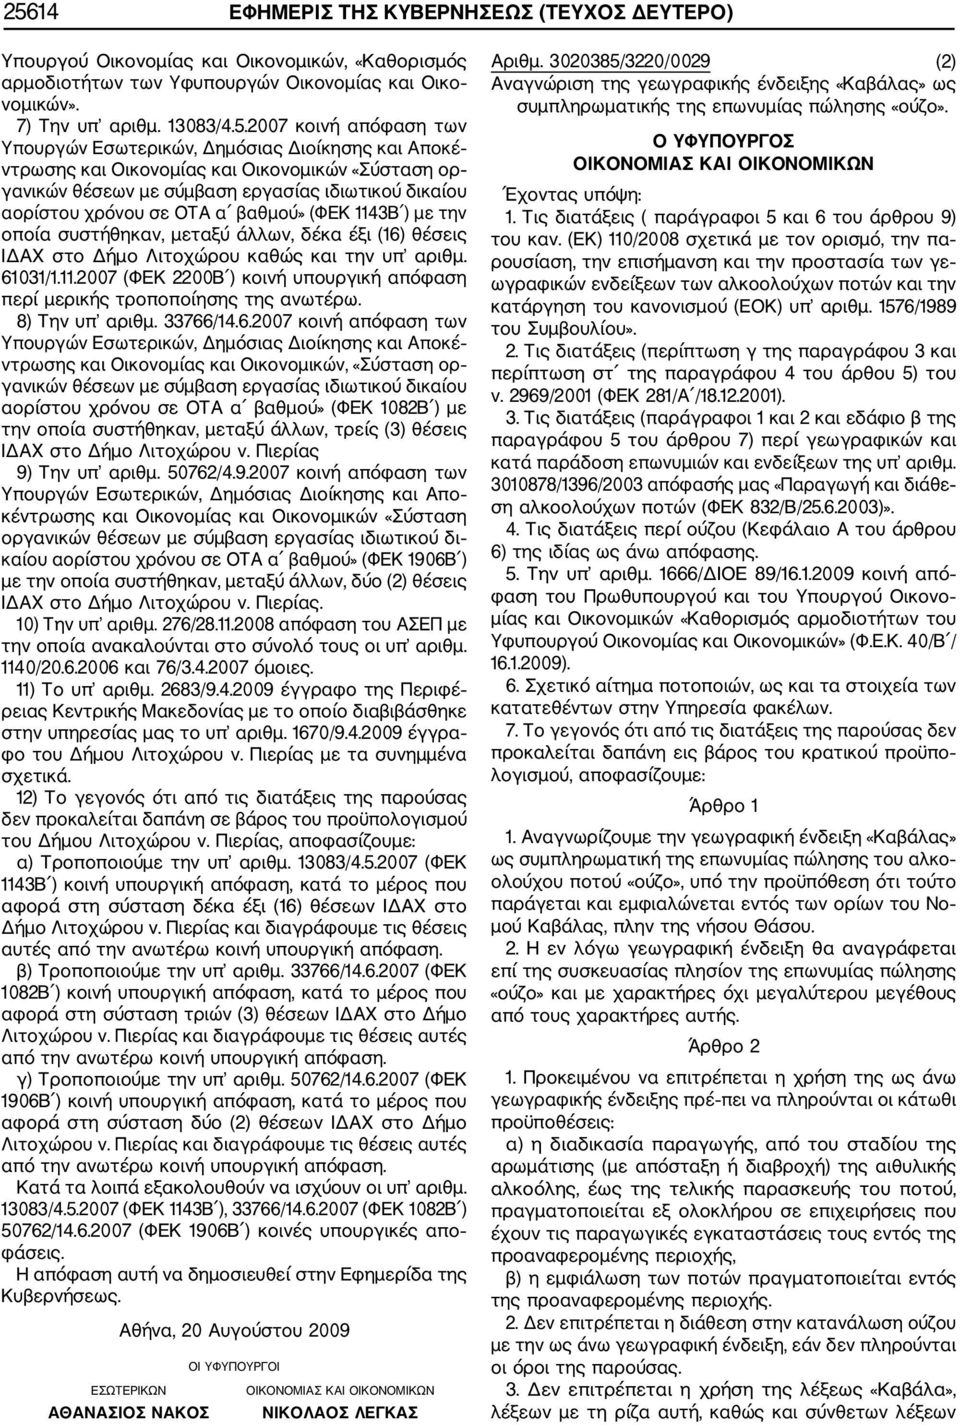 (ΦΕΚ 1143Β ) με την οποία συστήθηκαν, μεταξύ άλλων, δέκα έξι (16) θέσεις ΙΔΑΧ στο Δήμο Λιτοχώρου καθώς και την υπ αριθμ. 61031/1.11.2007 (ΦΕΚ 2200Β ) κοινή υπουργική απόφαση περί μερικής τροποποίησης της ανωτέρω.